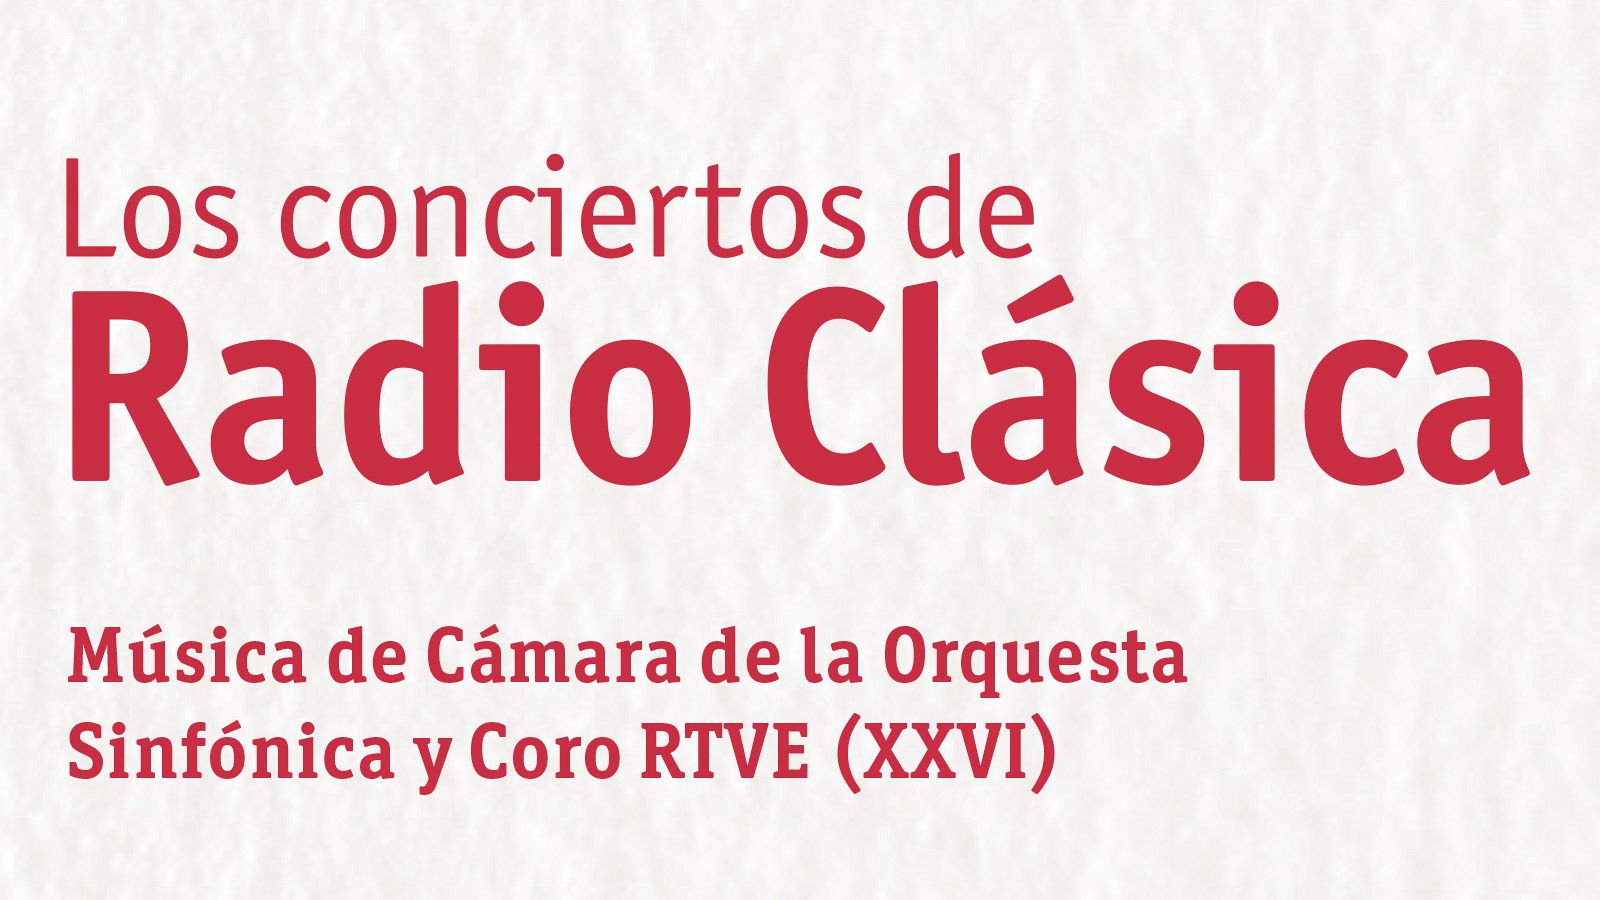 Cartel de XXVI Ciclo de Música de Cámara de la Orquesta y Coro RTVE